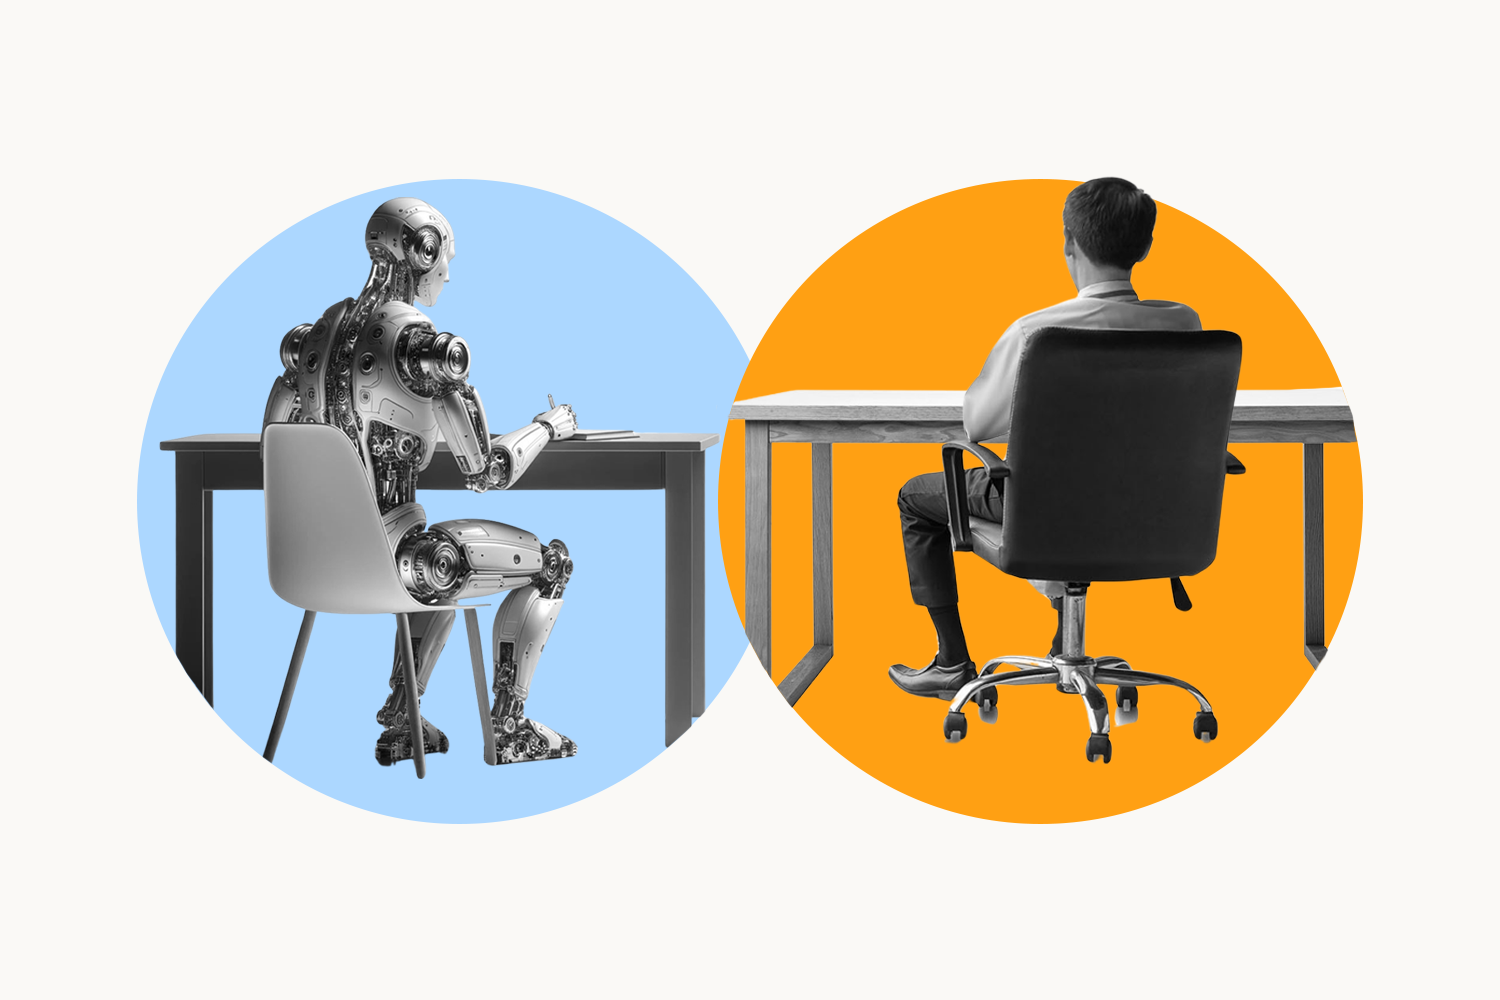 An AI robot sitting at an office desk next to a businessman sitting at another office desk